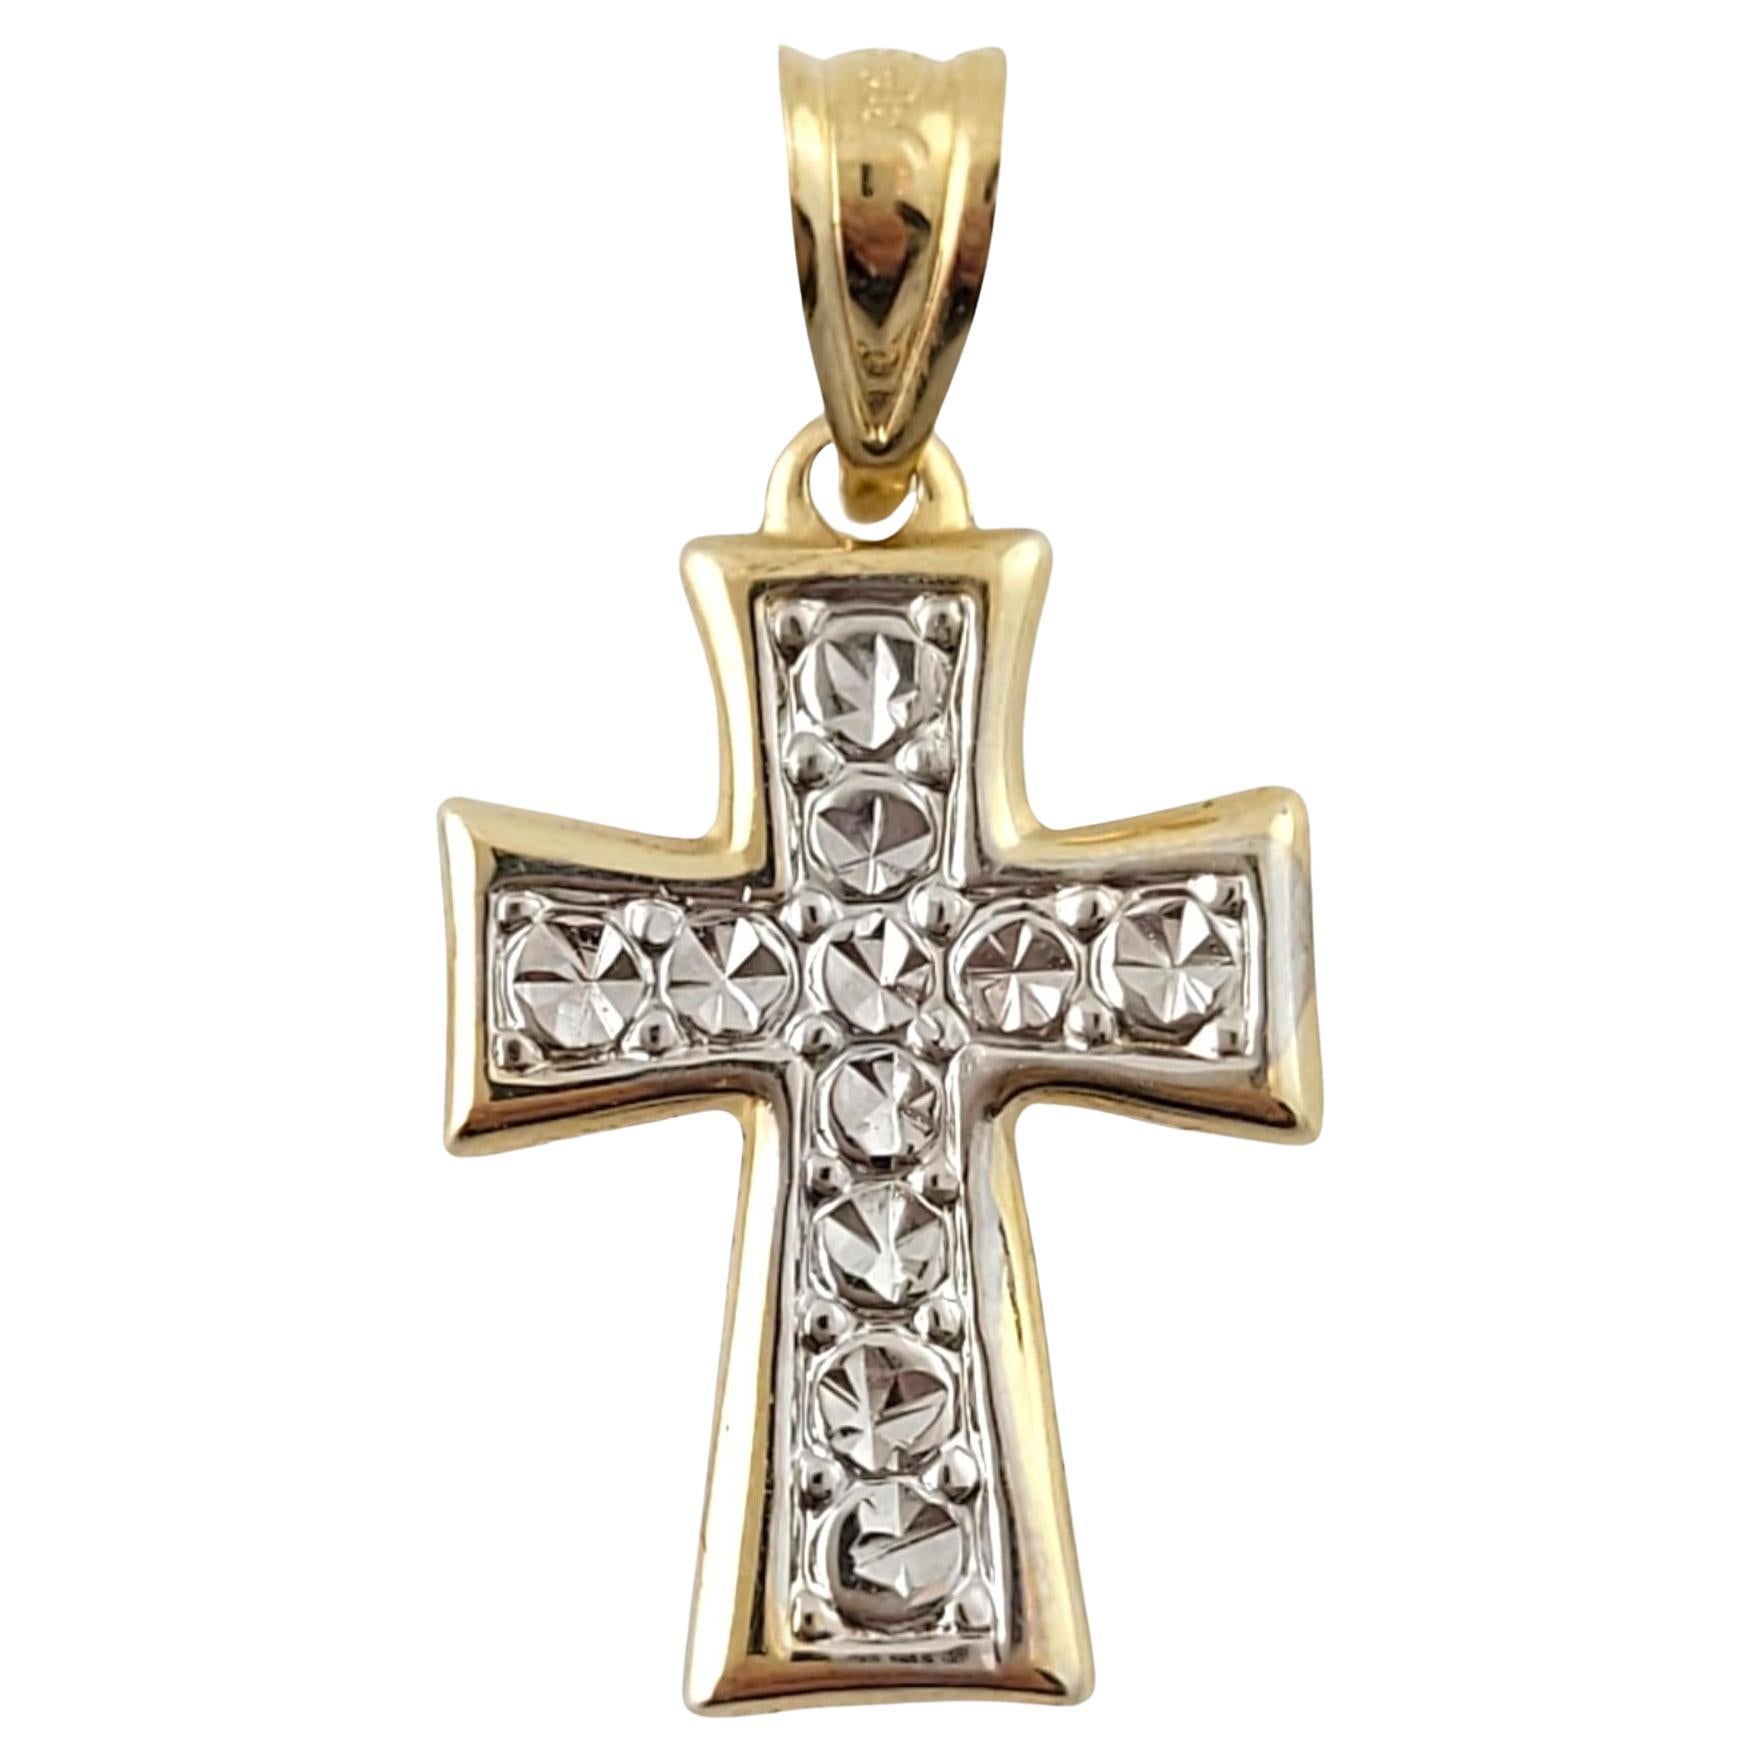 Pendentif croix en or jaune et blanc 14 carats n°17343